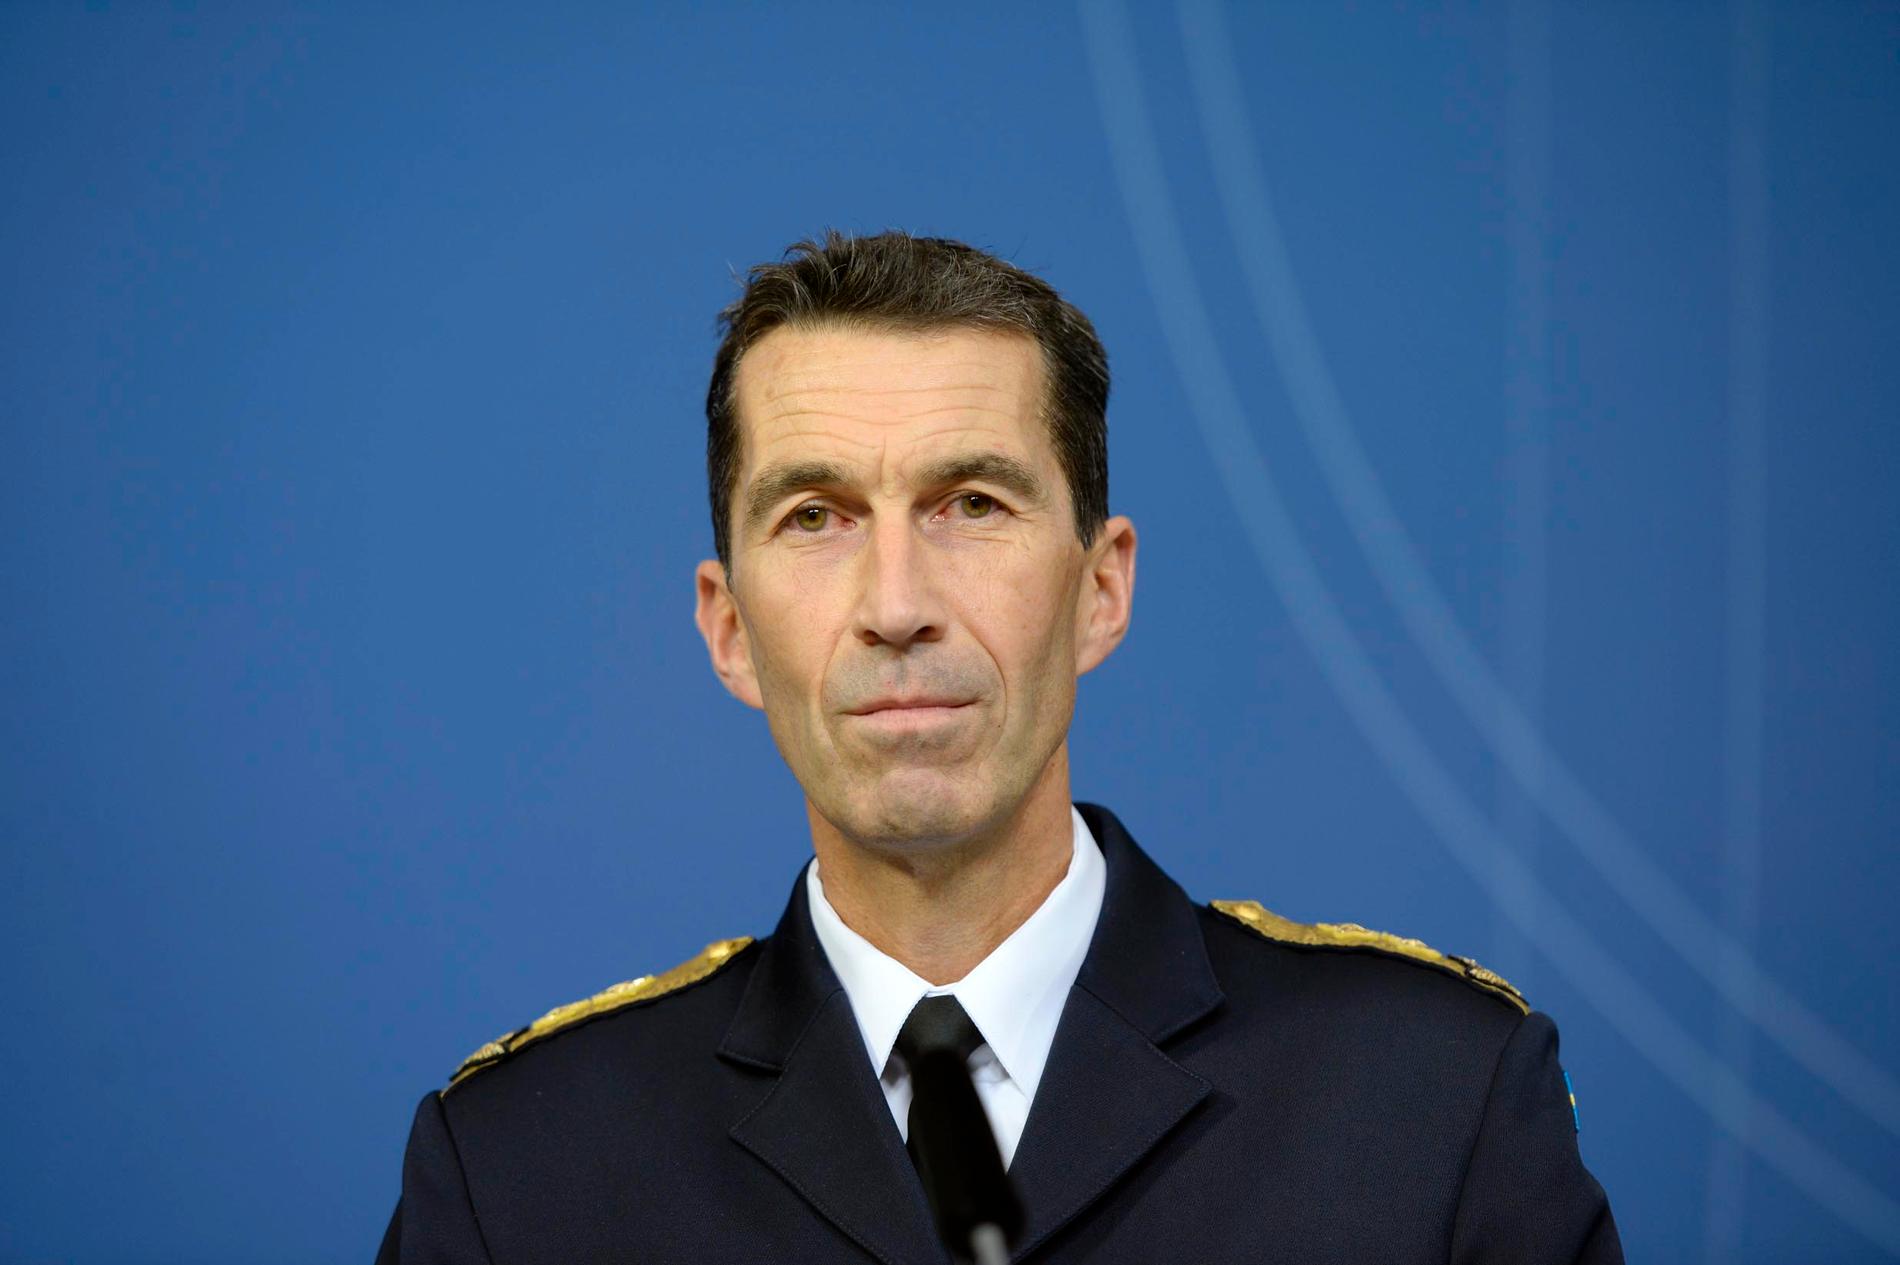 Micael Bydén, generalmajor och flygvapenchef, får jobbet.